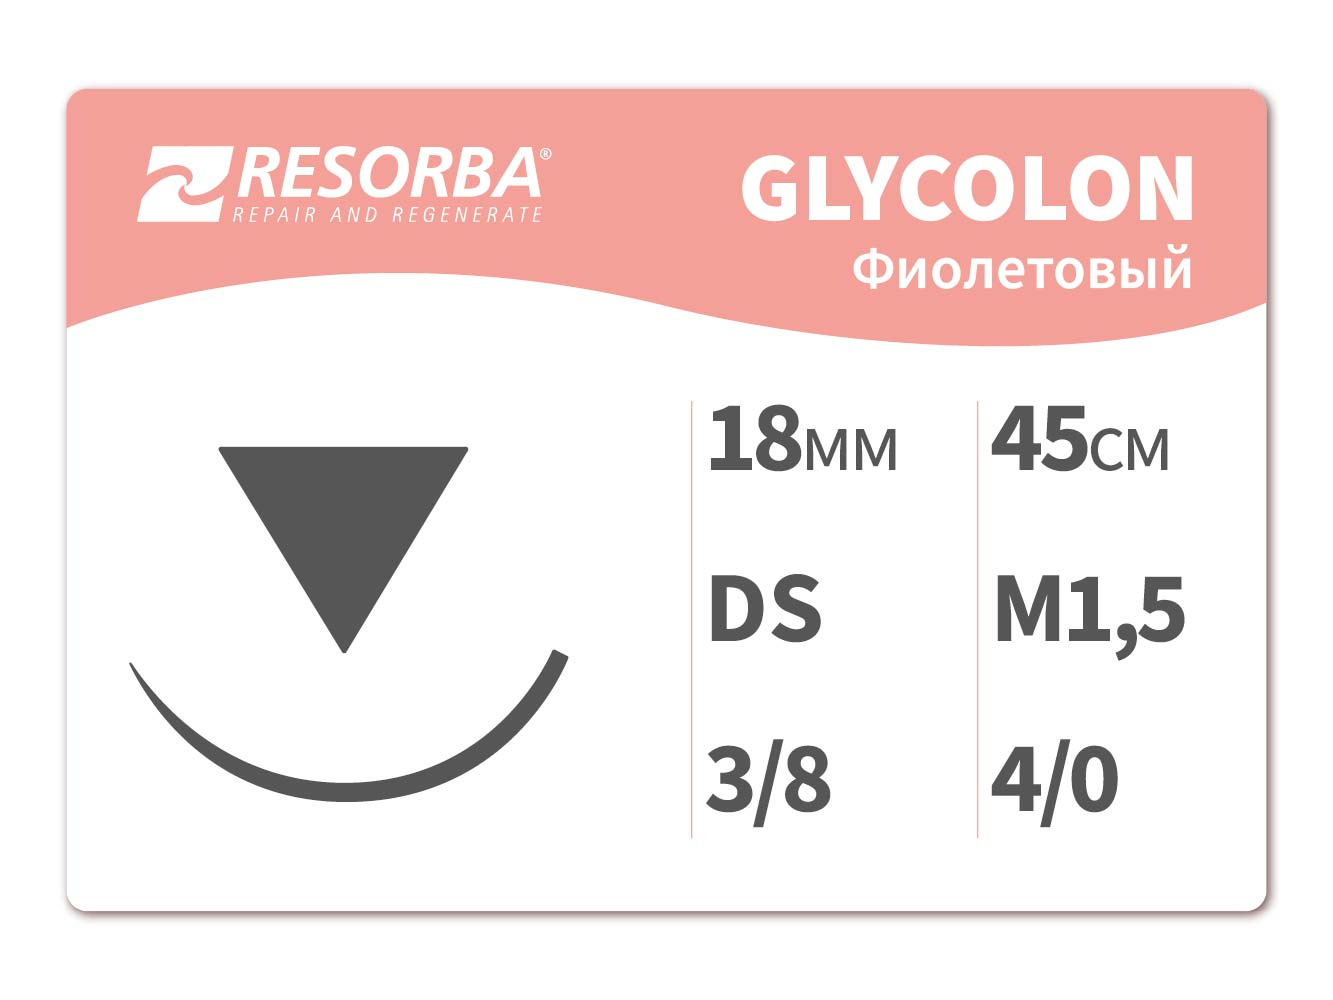 41420 Гликолон фиолетовый М1.5, (4/0), 45 см, DS18.PB, Ресорба/RESORBA (Германия)